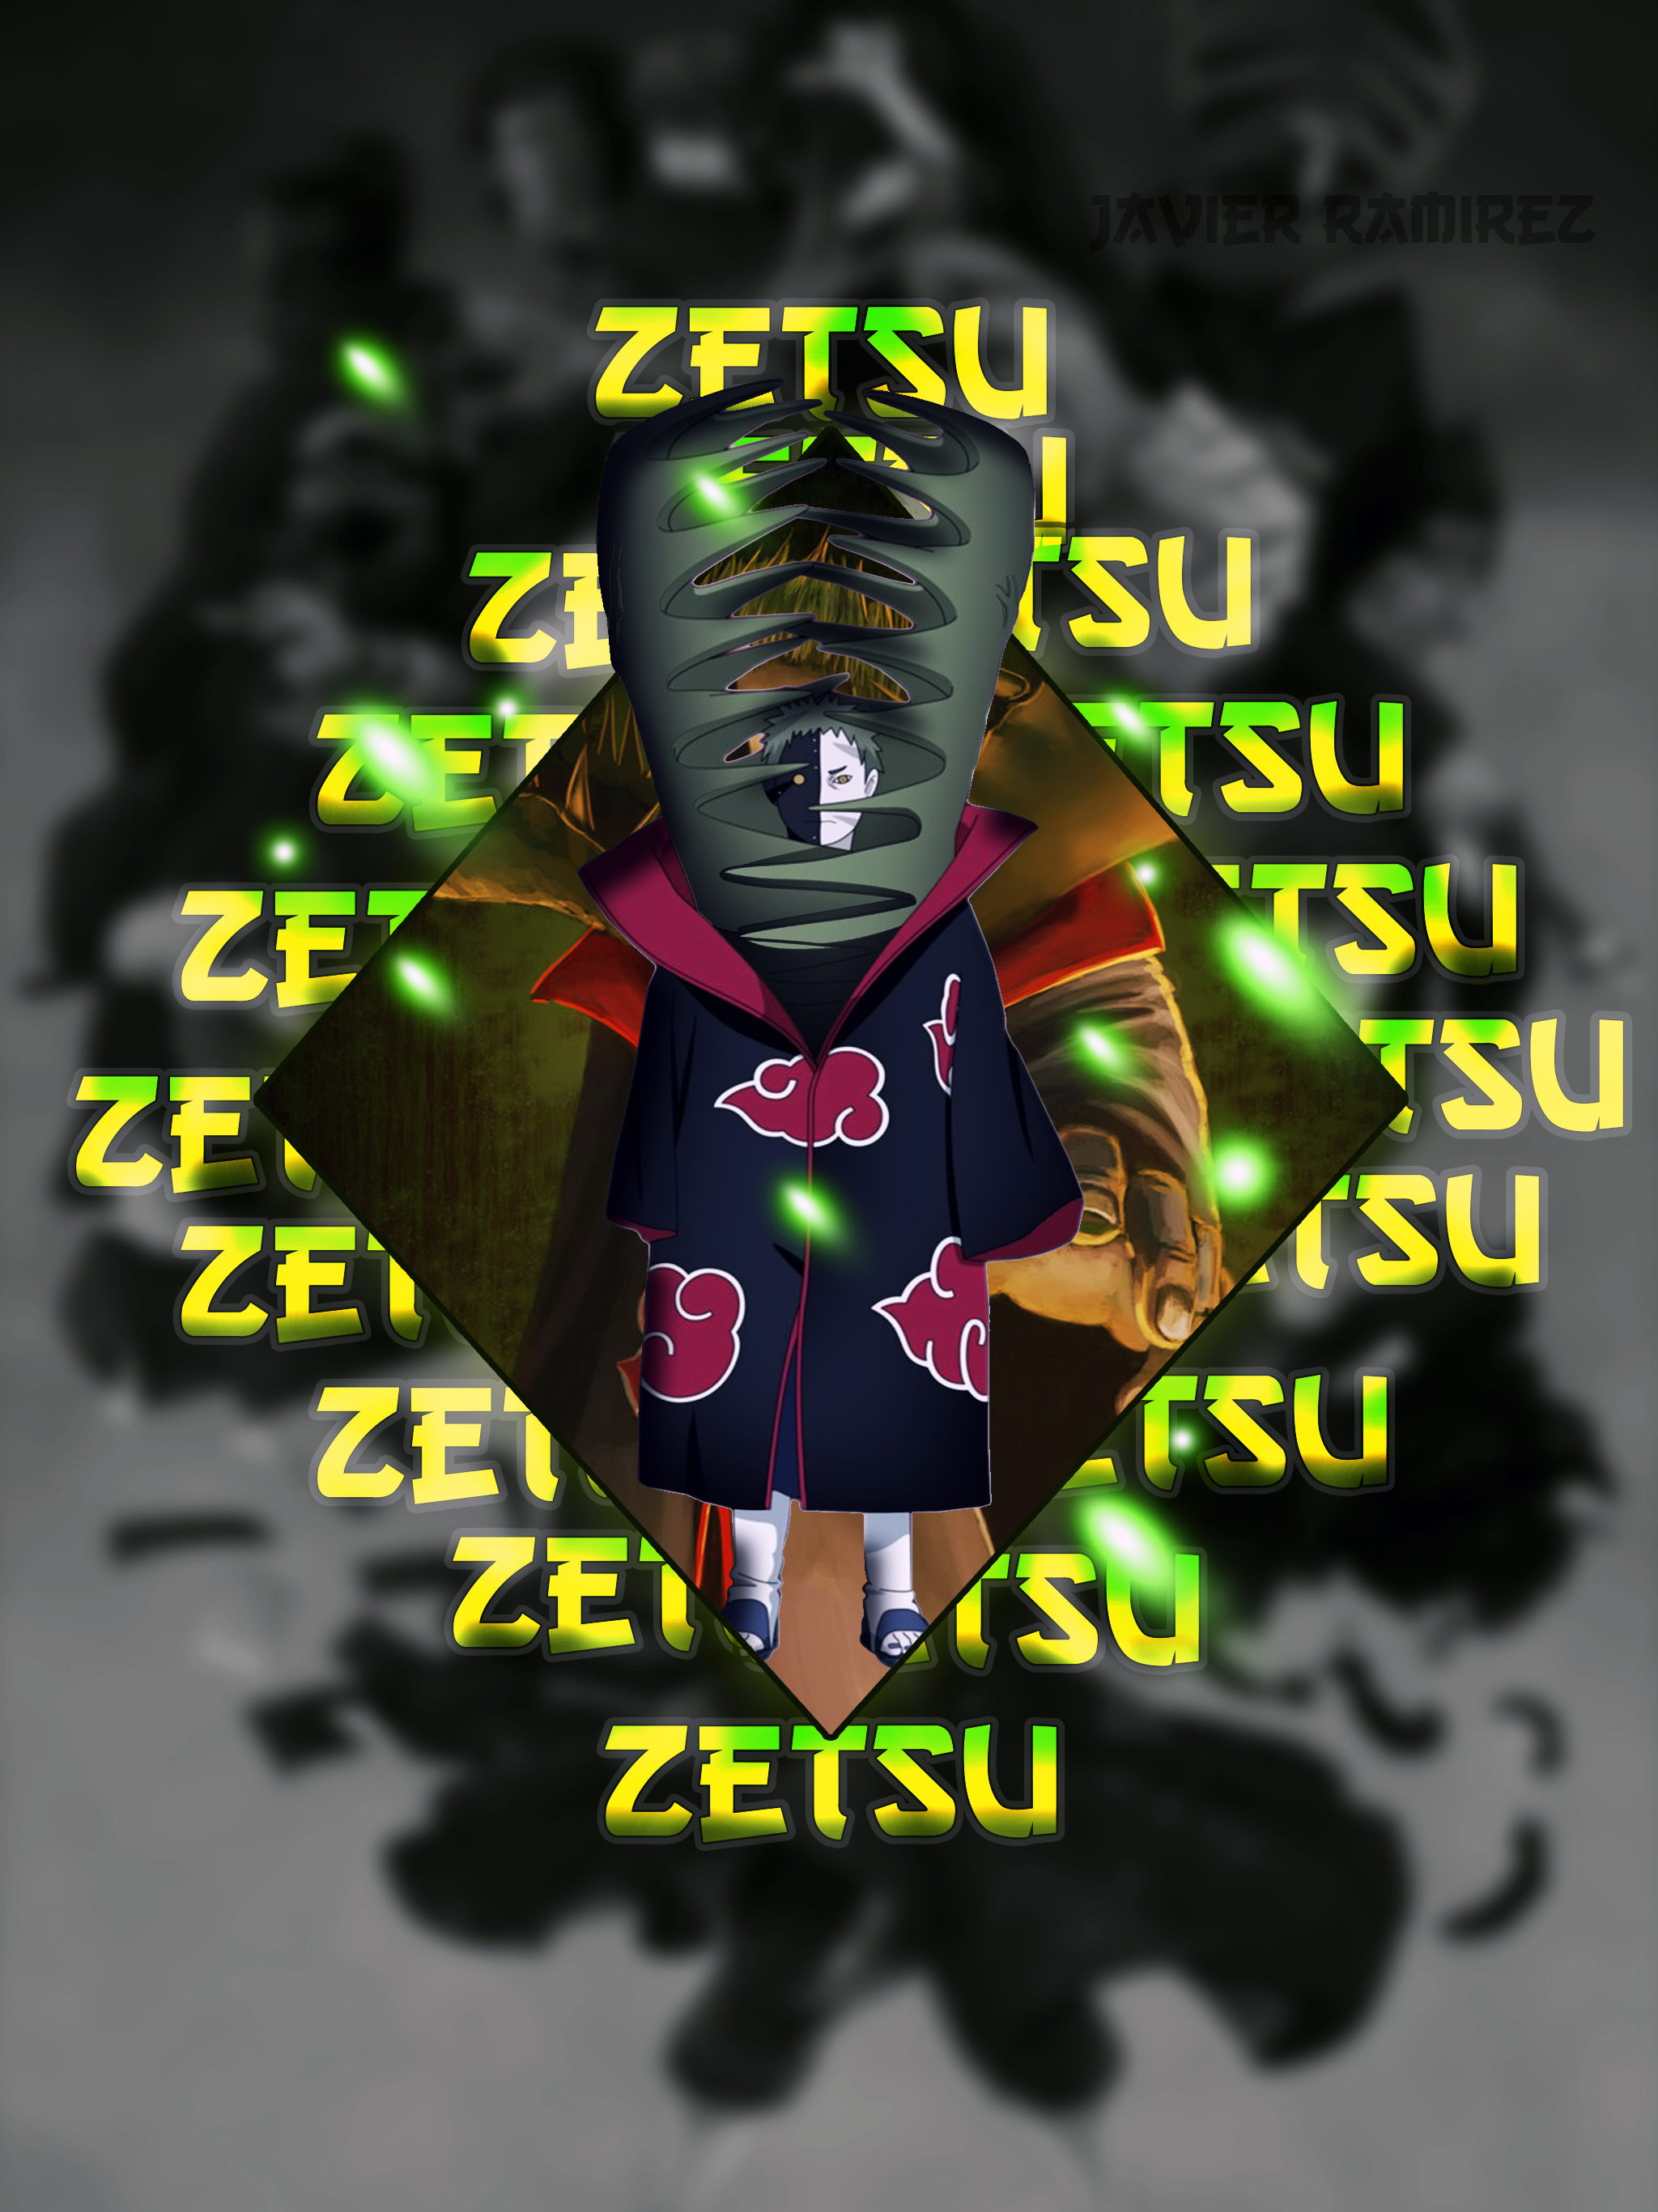 Zetsu by xJavierRamirezx